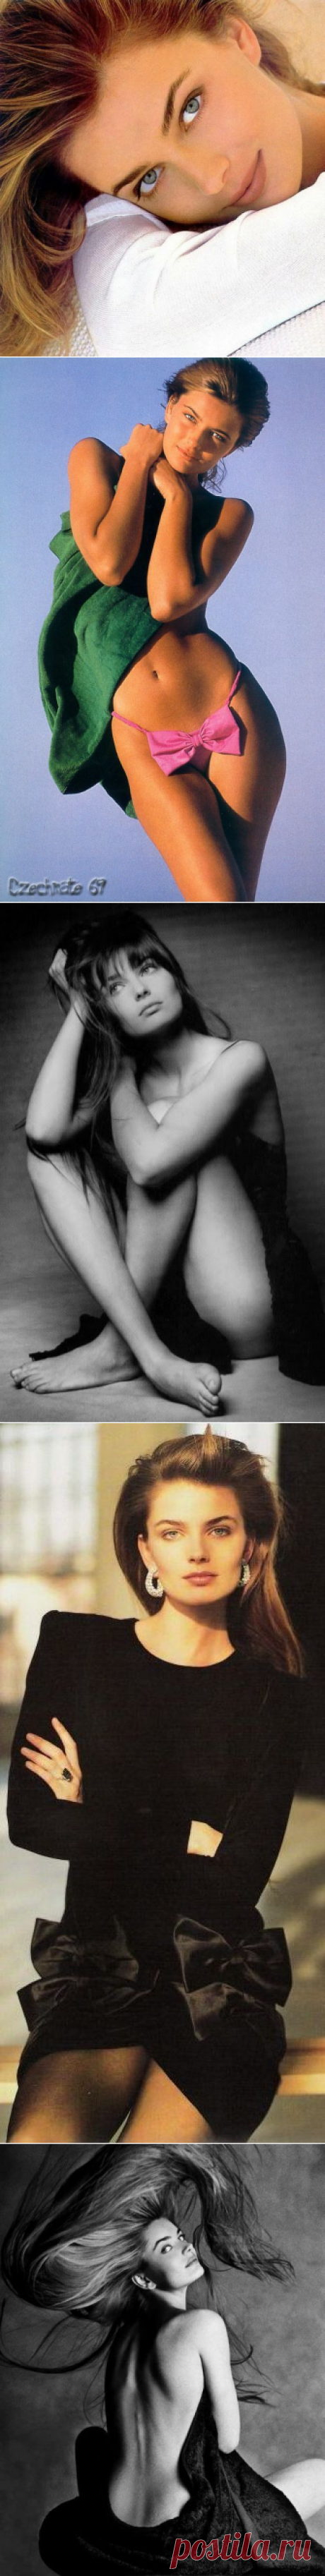 Красотка дня: Паулина Поризкова (16 фото)Чешская модель после своего неудачного дебюта,  попадает к Эмиру Кустурице, в фильме “Аризонская мечта” (в котором снимались также Джонни Депп и Фэй Данауэй). А потом